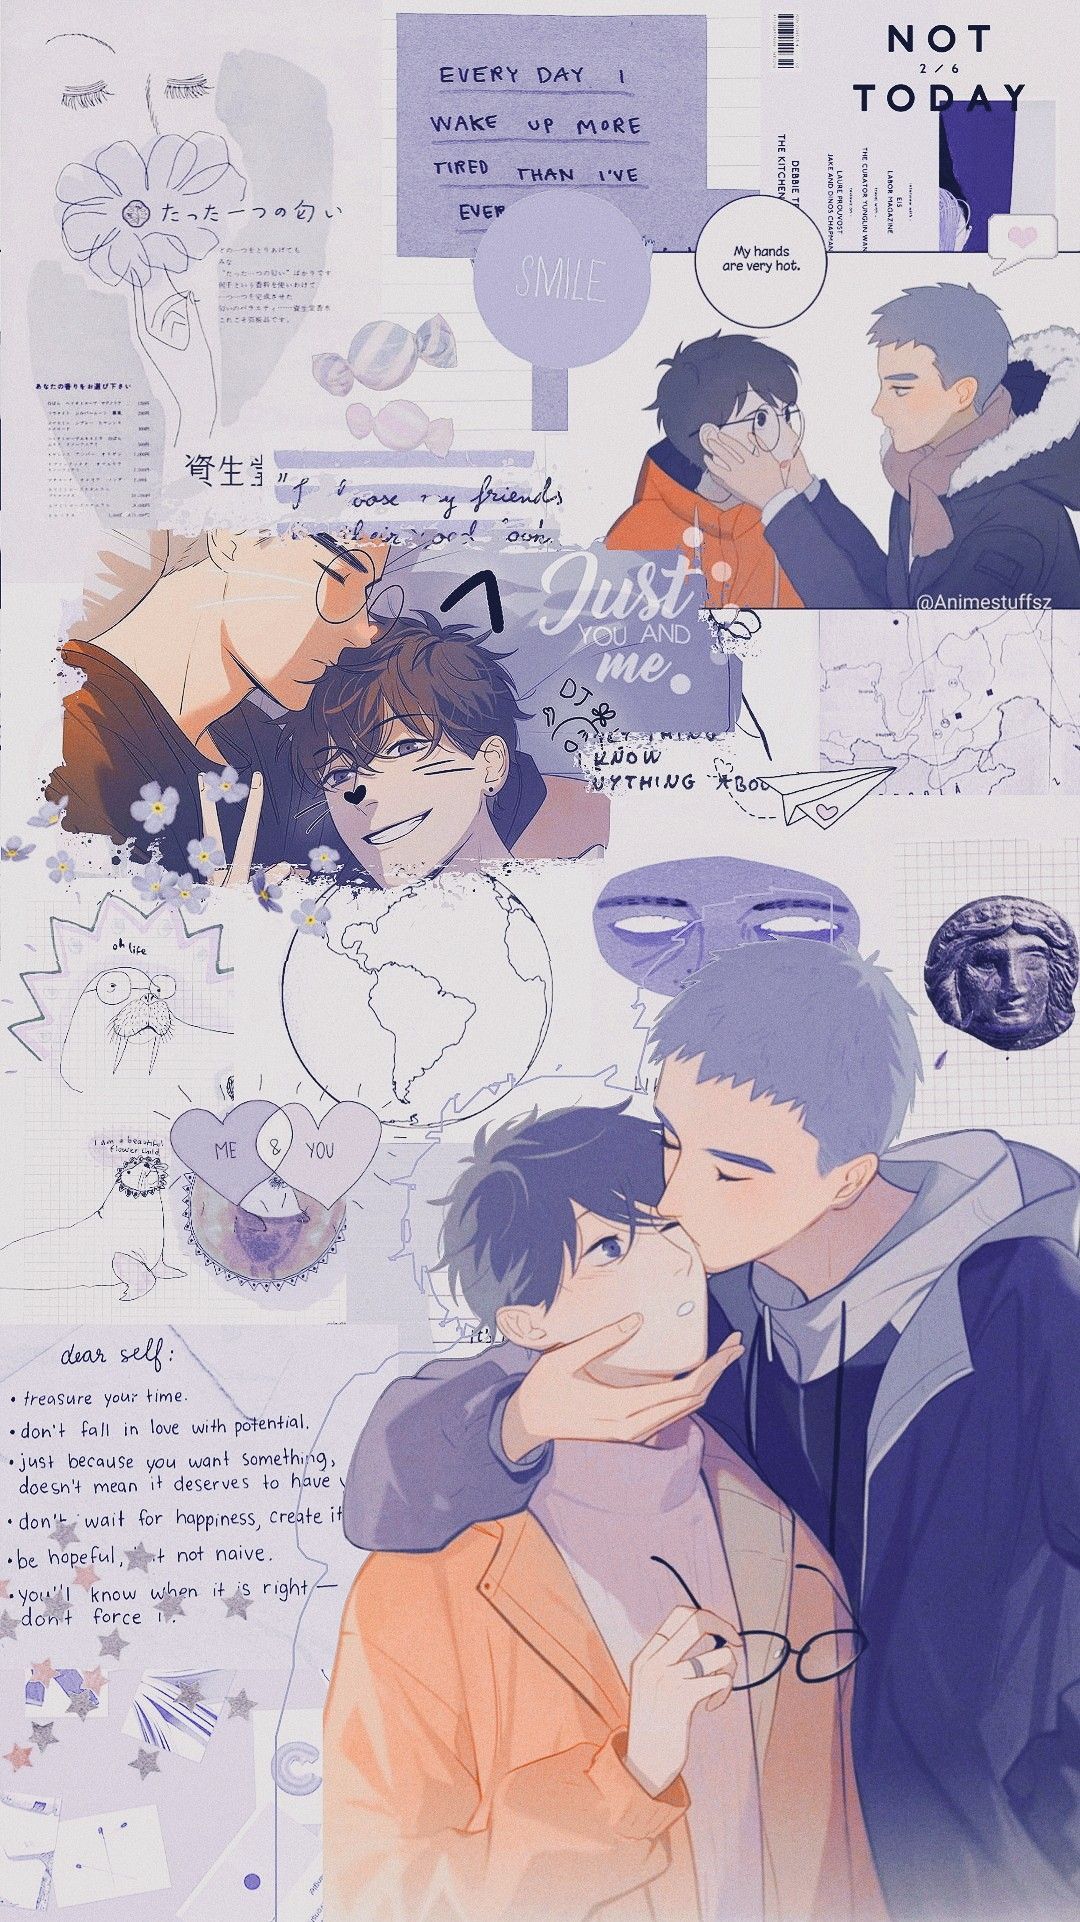 Here U Are. Animes wallpaper, Desenhos de anime, Fotos de desenhos tristes